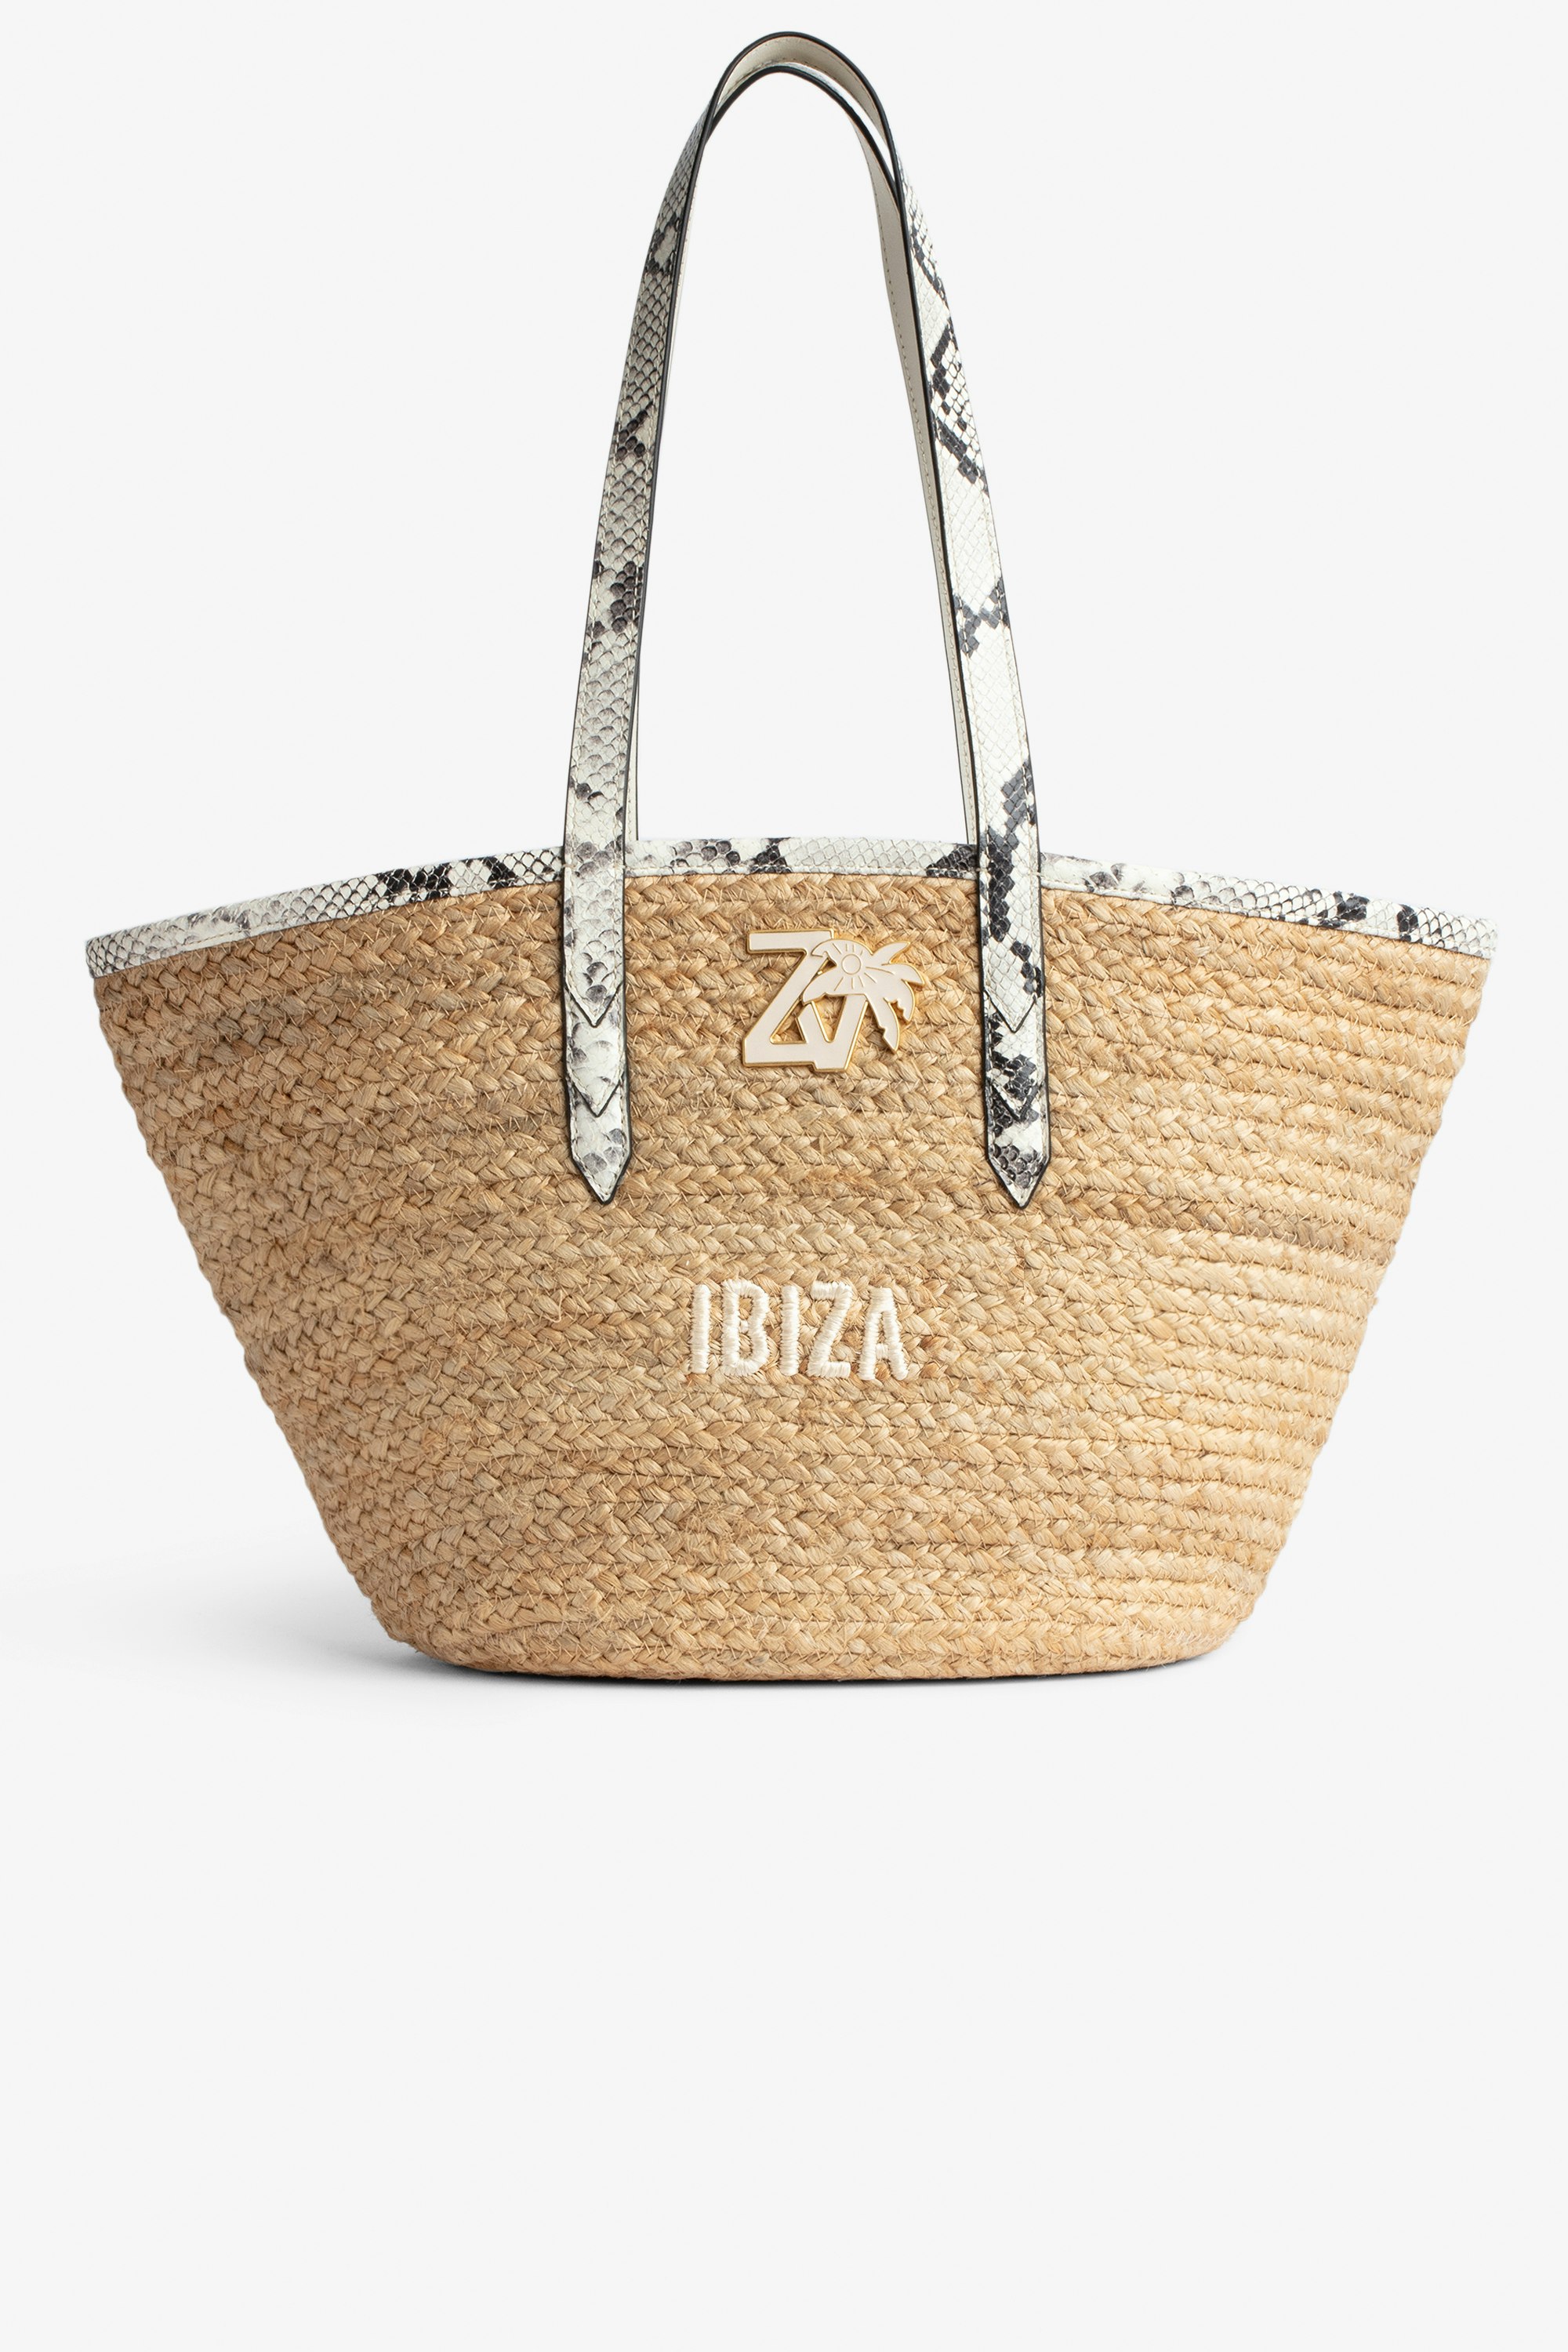 Sac Le Beach Bag - Sac en paille à anses en cuir écru effet python, brodé "Ibiza" et orné d'un charm ZV.